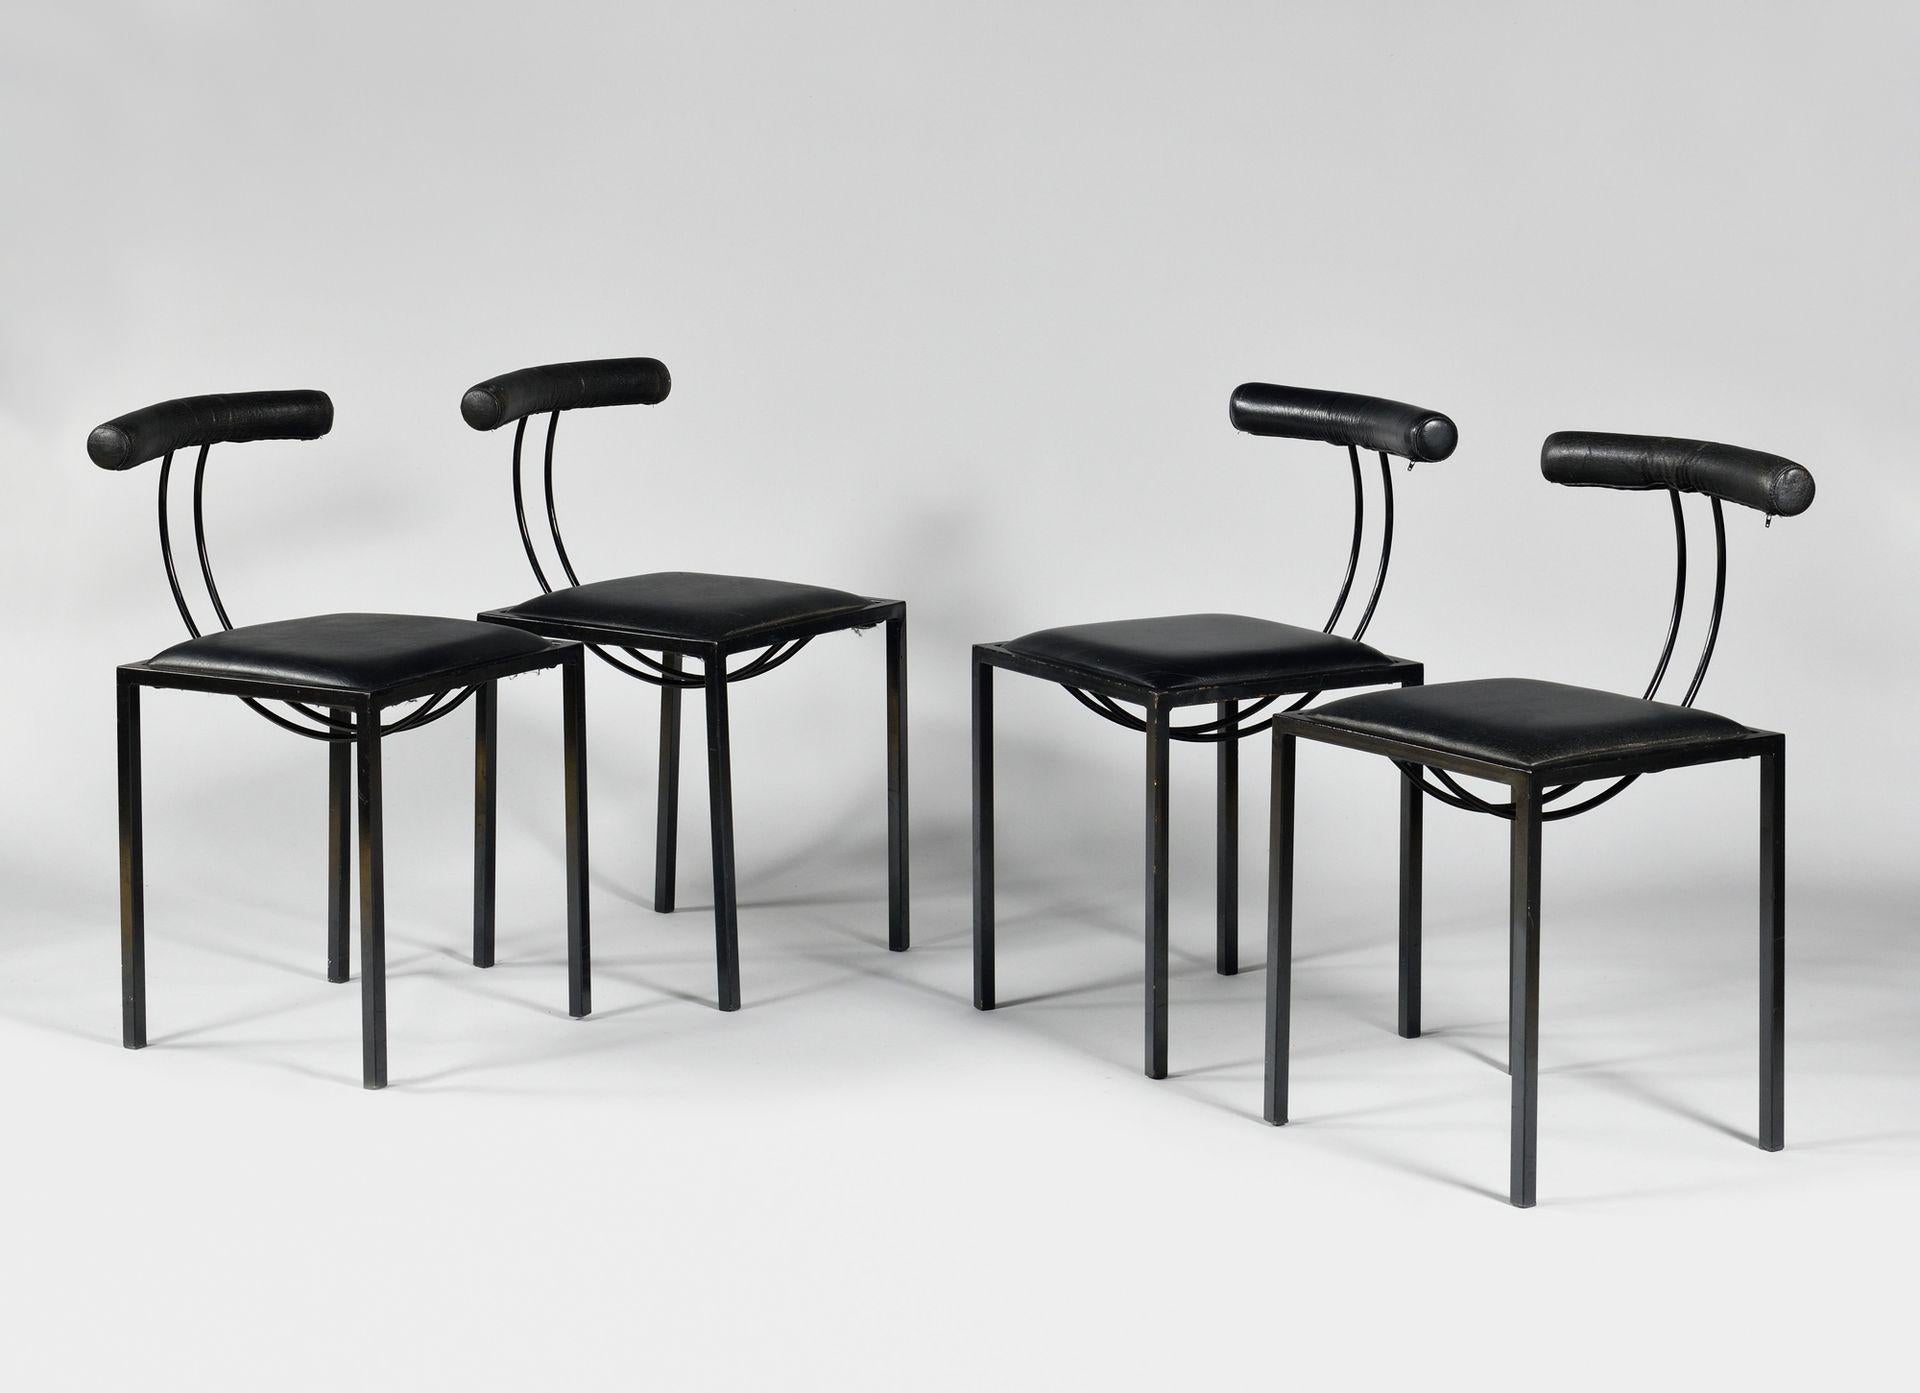 Annick et Samuel CIRCA, ensemble de 8 chaises, éd. Artelano, vers 1980

Métal laqué noir, aggloméré, mousse et tissu en skaï noir. 
Hauteur 75 x Largeur 40 x Profondeur 40 cm

ARTELANO est un éditeur français de mobilier contemporain haut de gamme